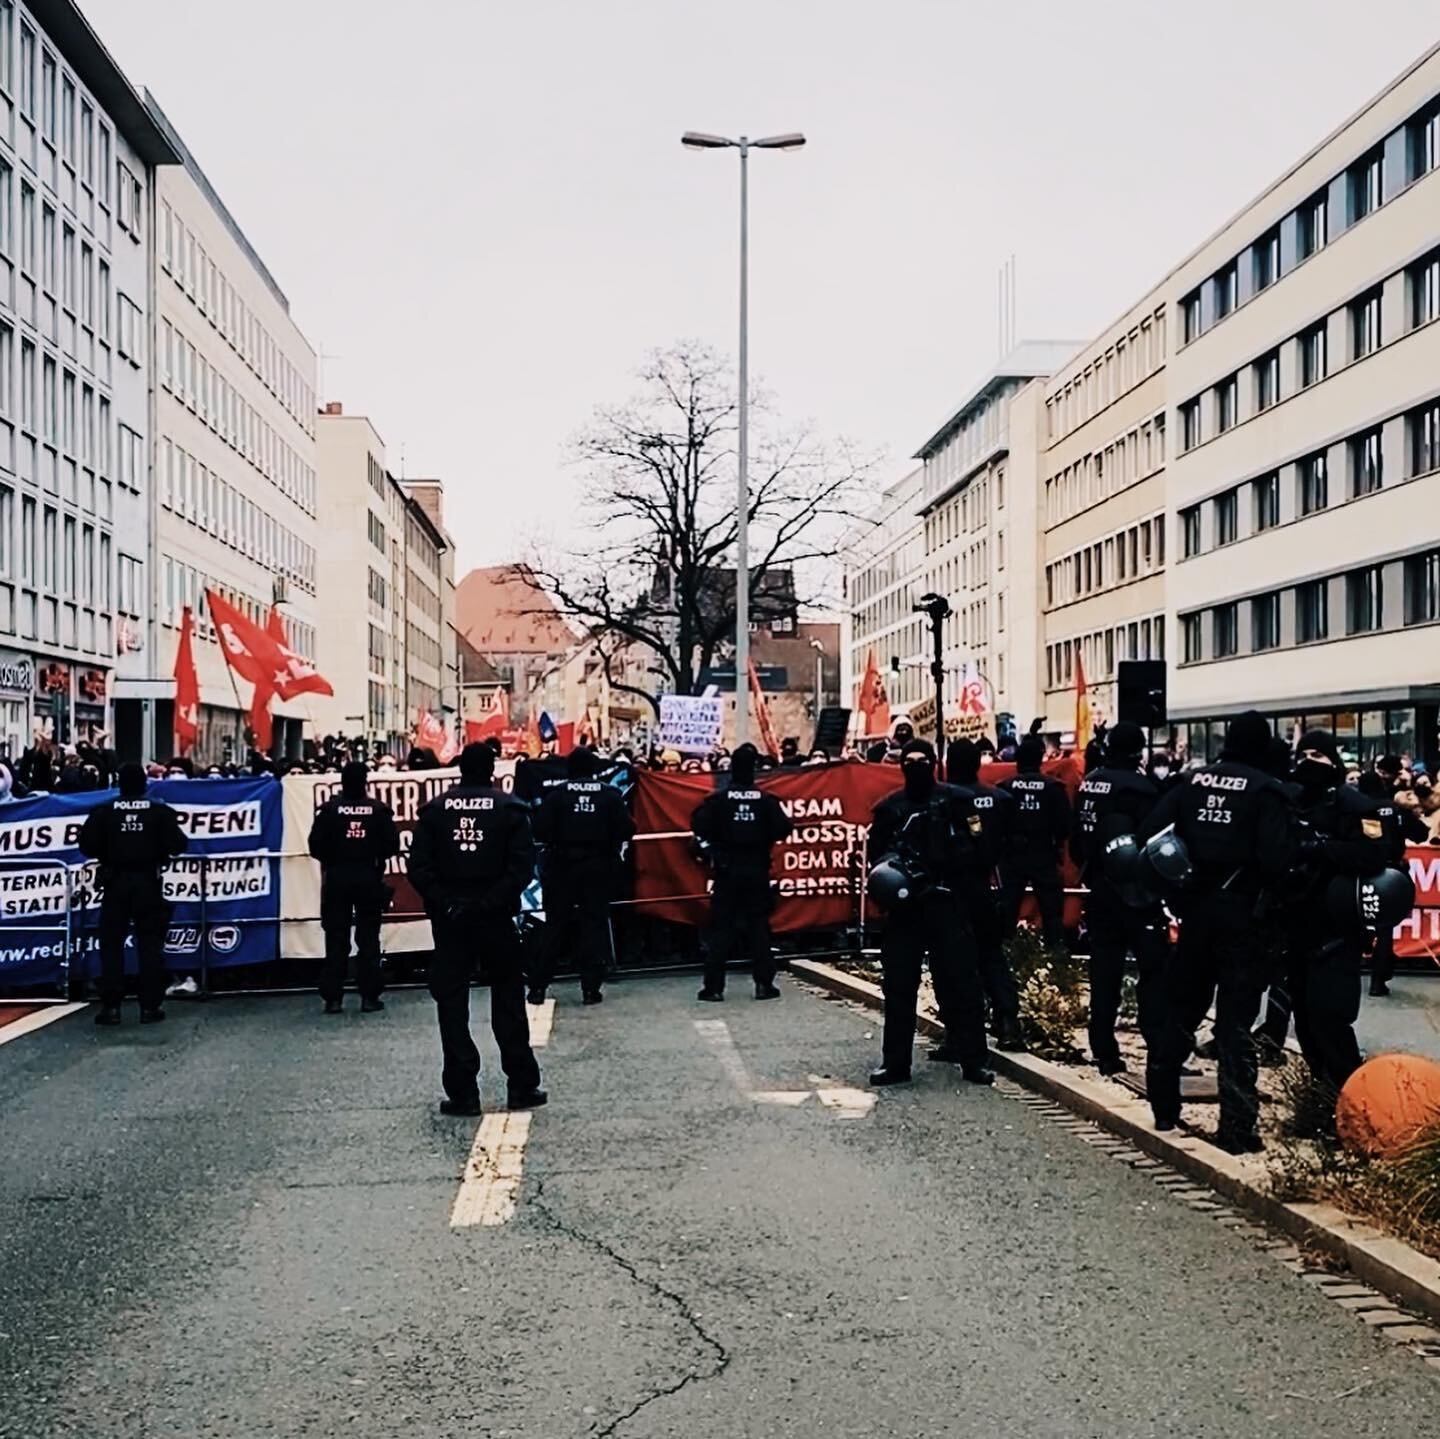 Demotag heute in N&uuml;rnberg. Erst Querdenker Szene dann AFD und zum Abschluss Antifa. 10km Fu&szlig;marsch, kalt war&rsquo;s aber spannend
#bavaria #live #n&uuml;rnberg #corona #liveu #onair #work #demo #querdenker #antifa #nbg1912 #kameramann #ne